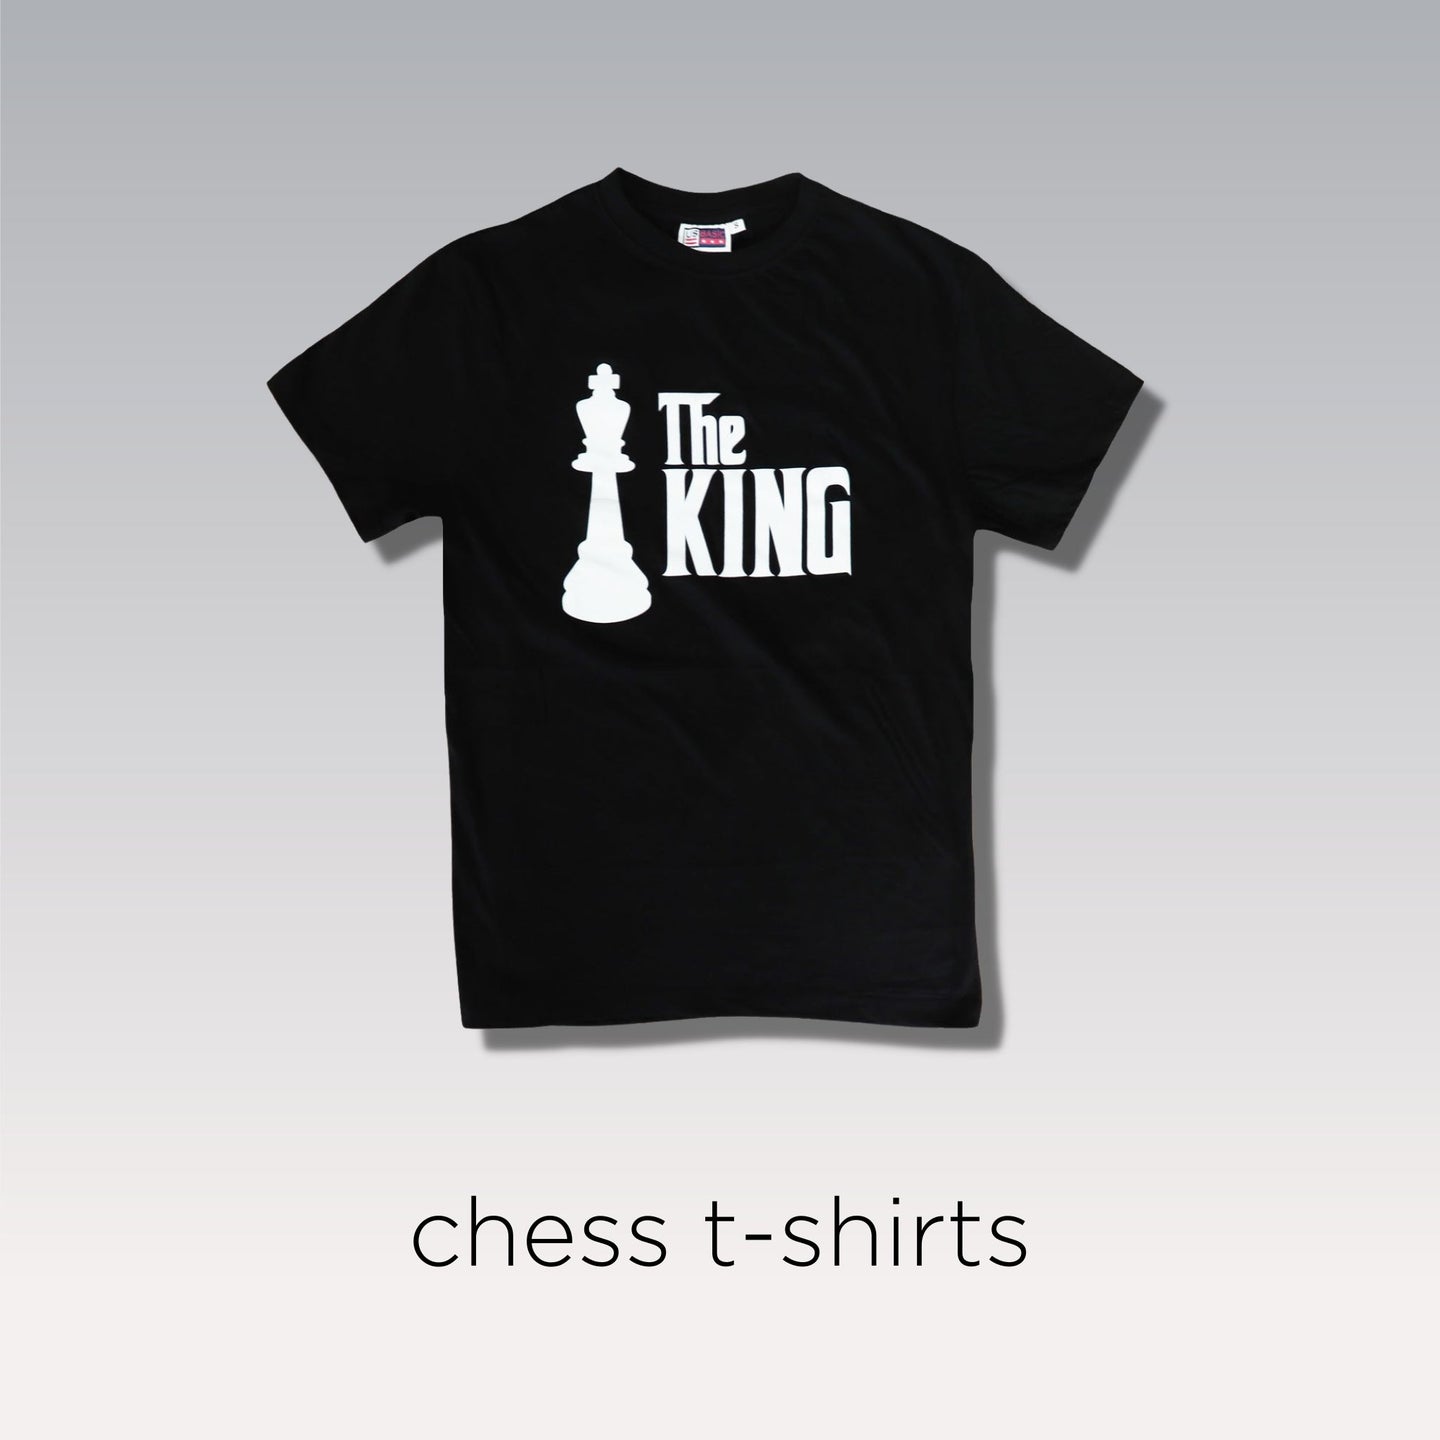 Chess t-shirts